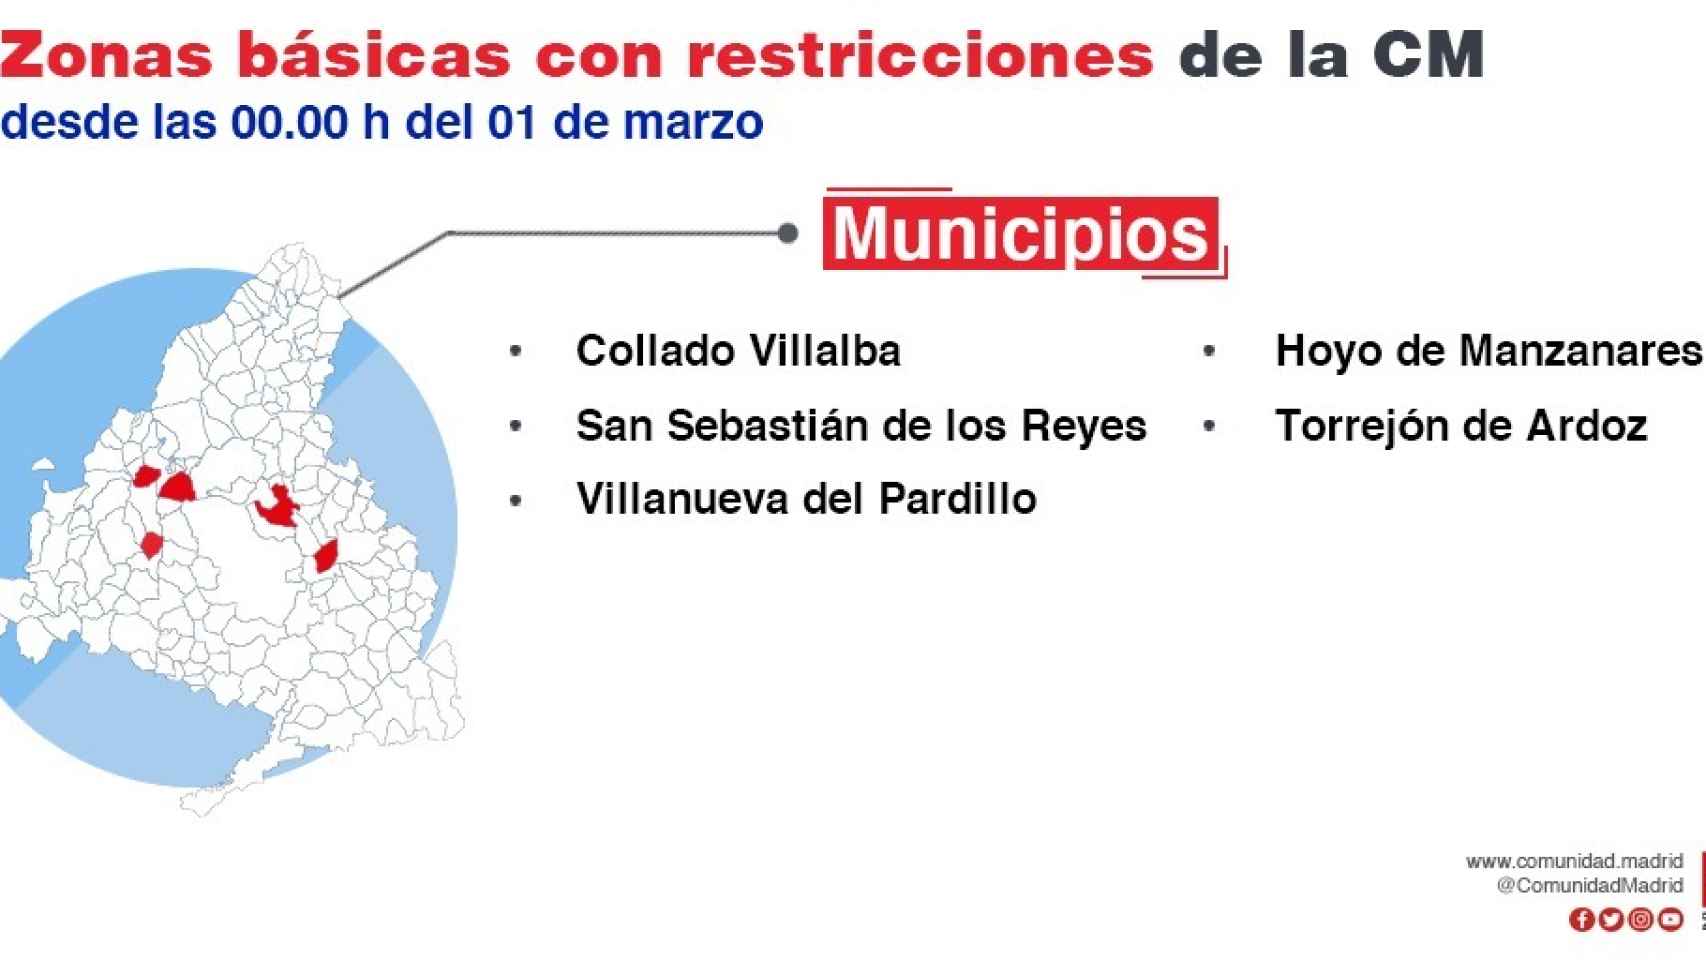 Municipios de la Comunidad de Madrid con restricciones.